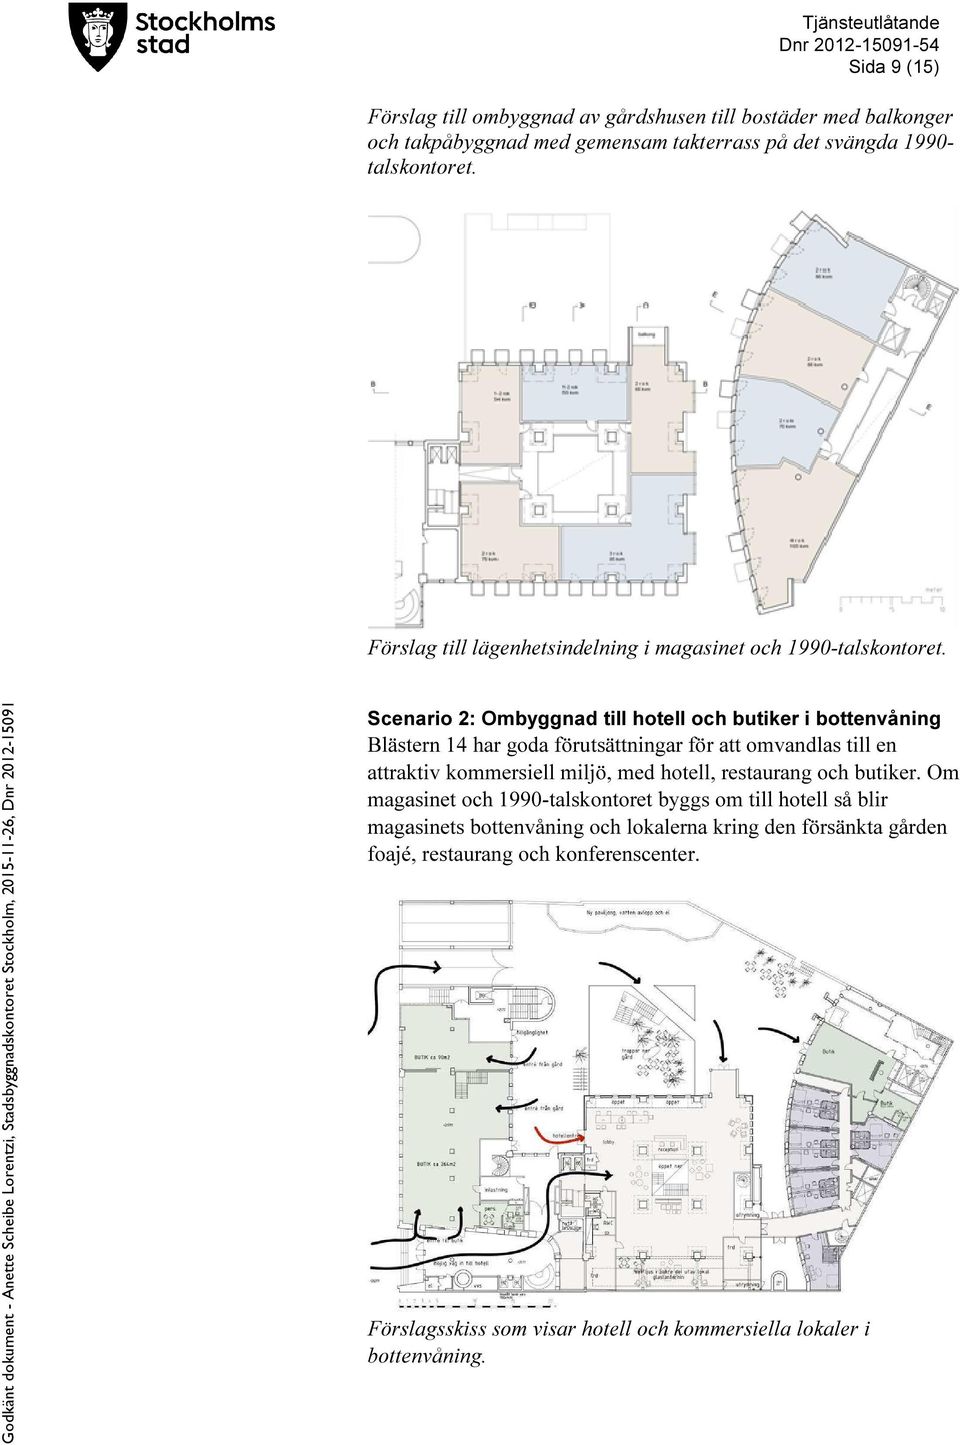 Scenario 2: Ombyggnad till hotell och butiker i bottenvåning Blästern 14 har goda förutsättningar för att omvandlas till en attraktiv kommersiell miljö, med